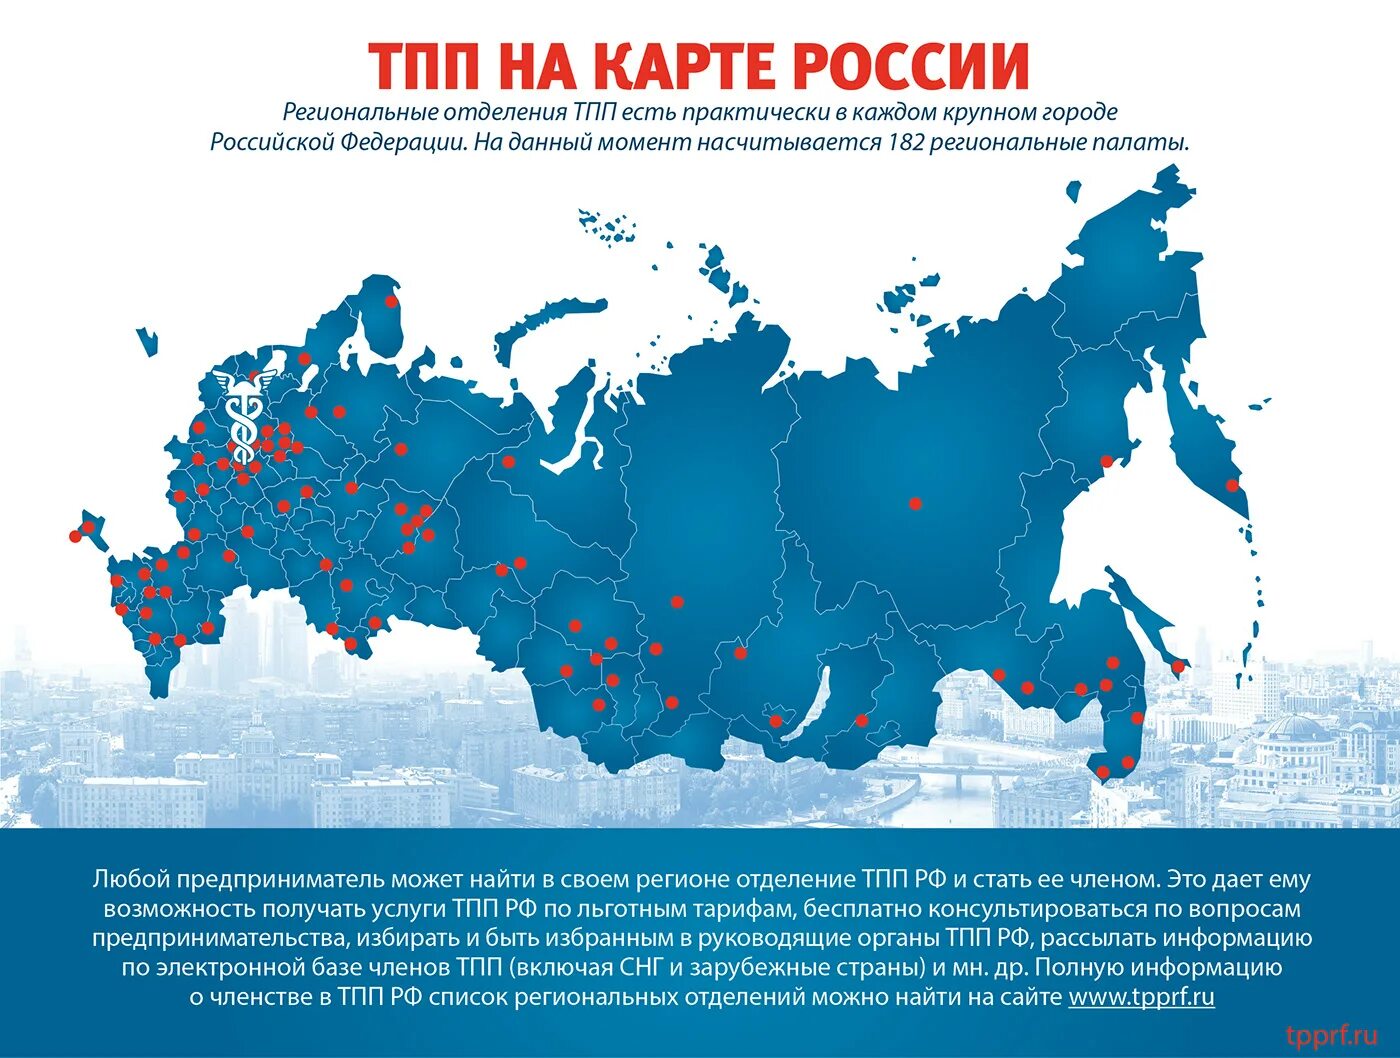 Карта ТПП РФ. ТПП на карте России. Карта РФ инфографика. Карта Росси инфографика.